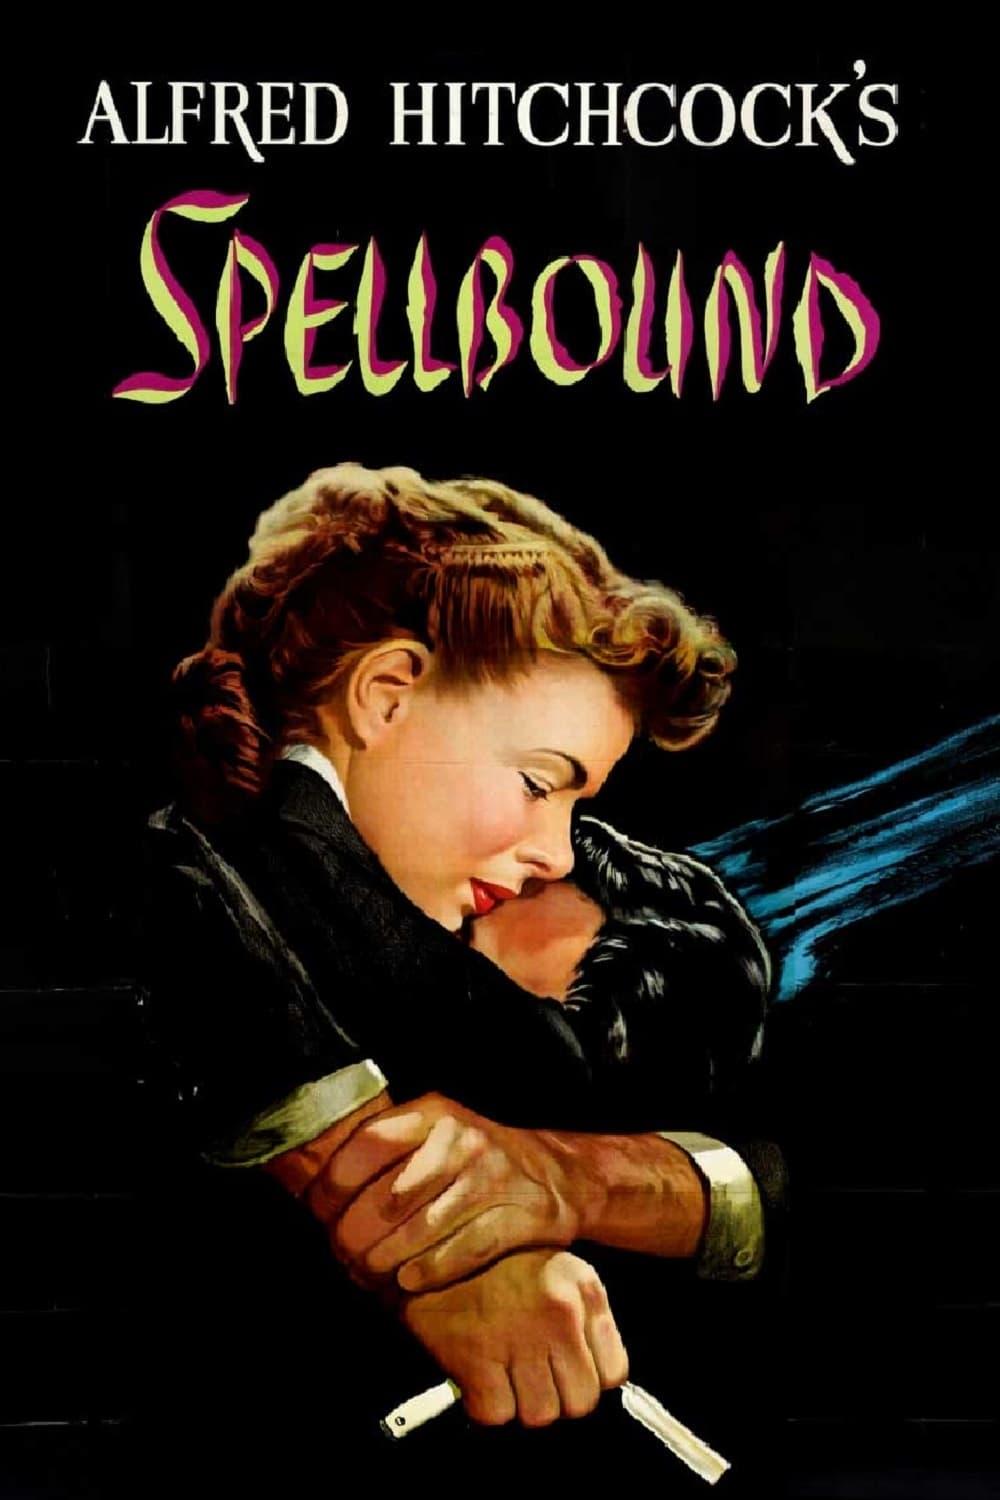 Spellbound poster